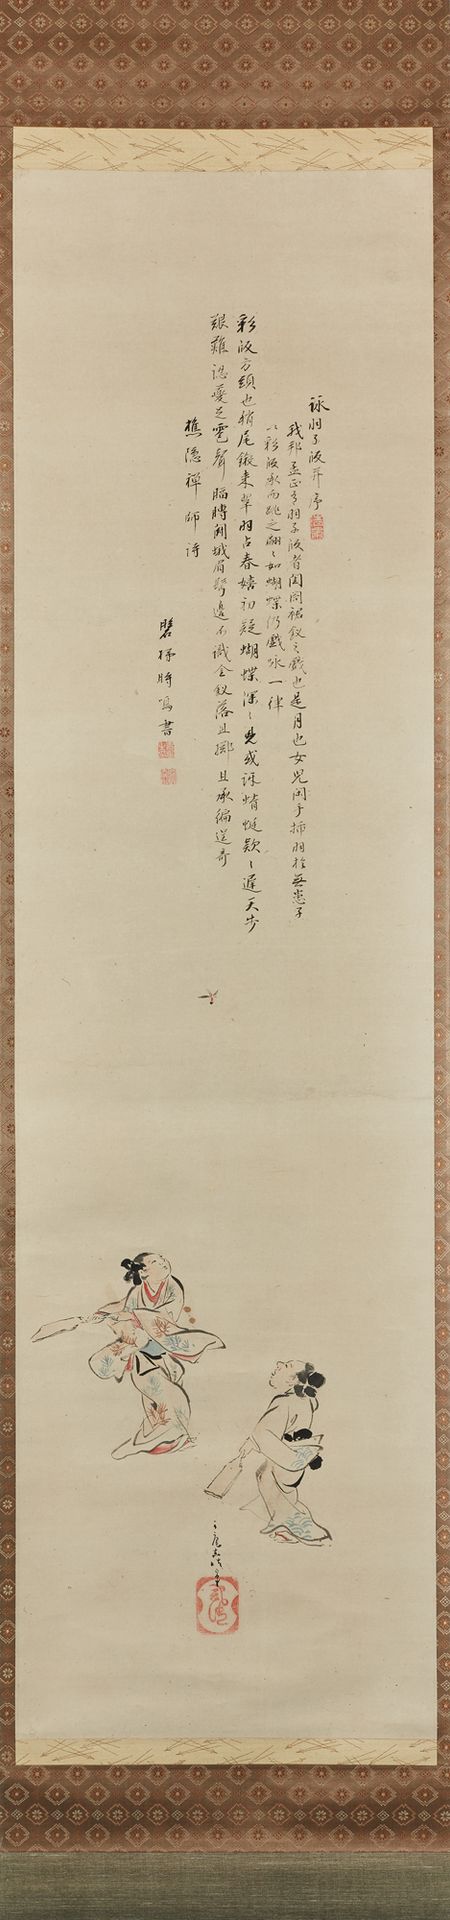 Kita Busei (1776-1856) Tinte auf Papier, zwei junge Frauen spielen ein Ballspiel&hellip;